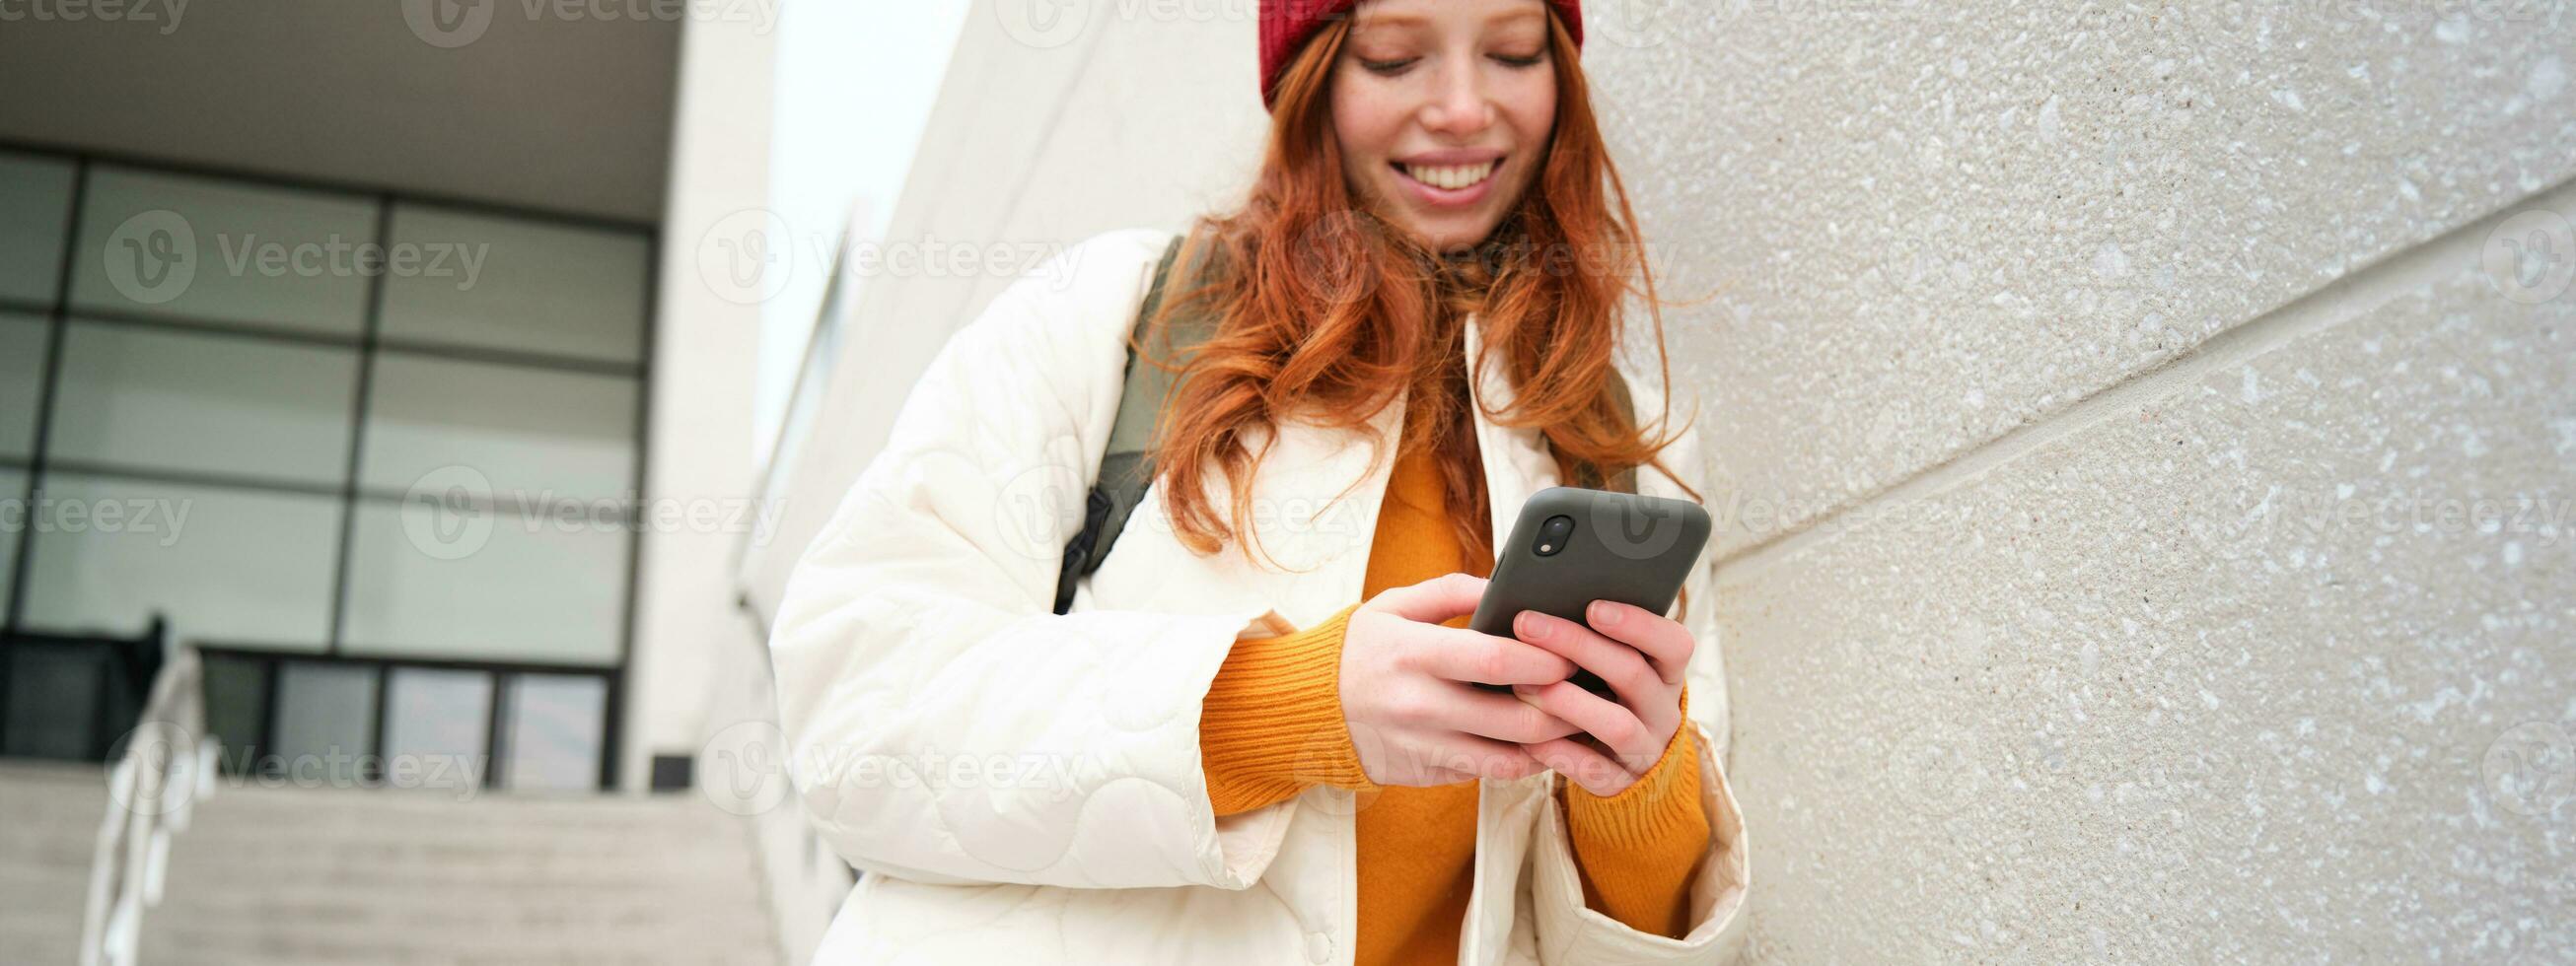 roodharige meisje, jong vrouw toerist met rugzak, houdt smartphone, looks voor route Aan mobiel sollicitatie, zoekopdrachten voor hotel Aan telefoon kaart, glimlacht gelukkig foto